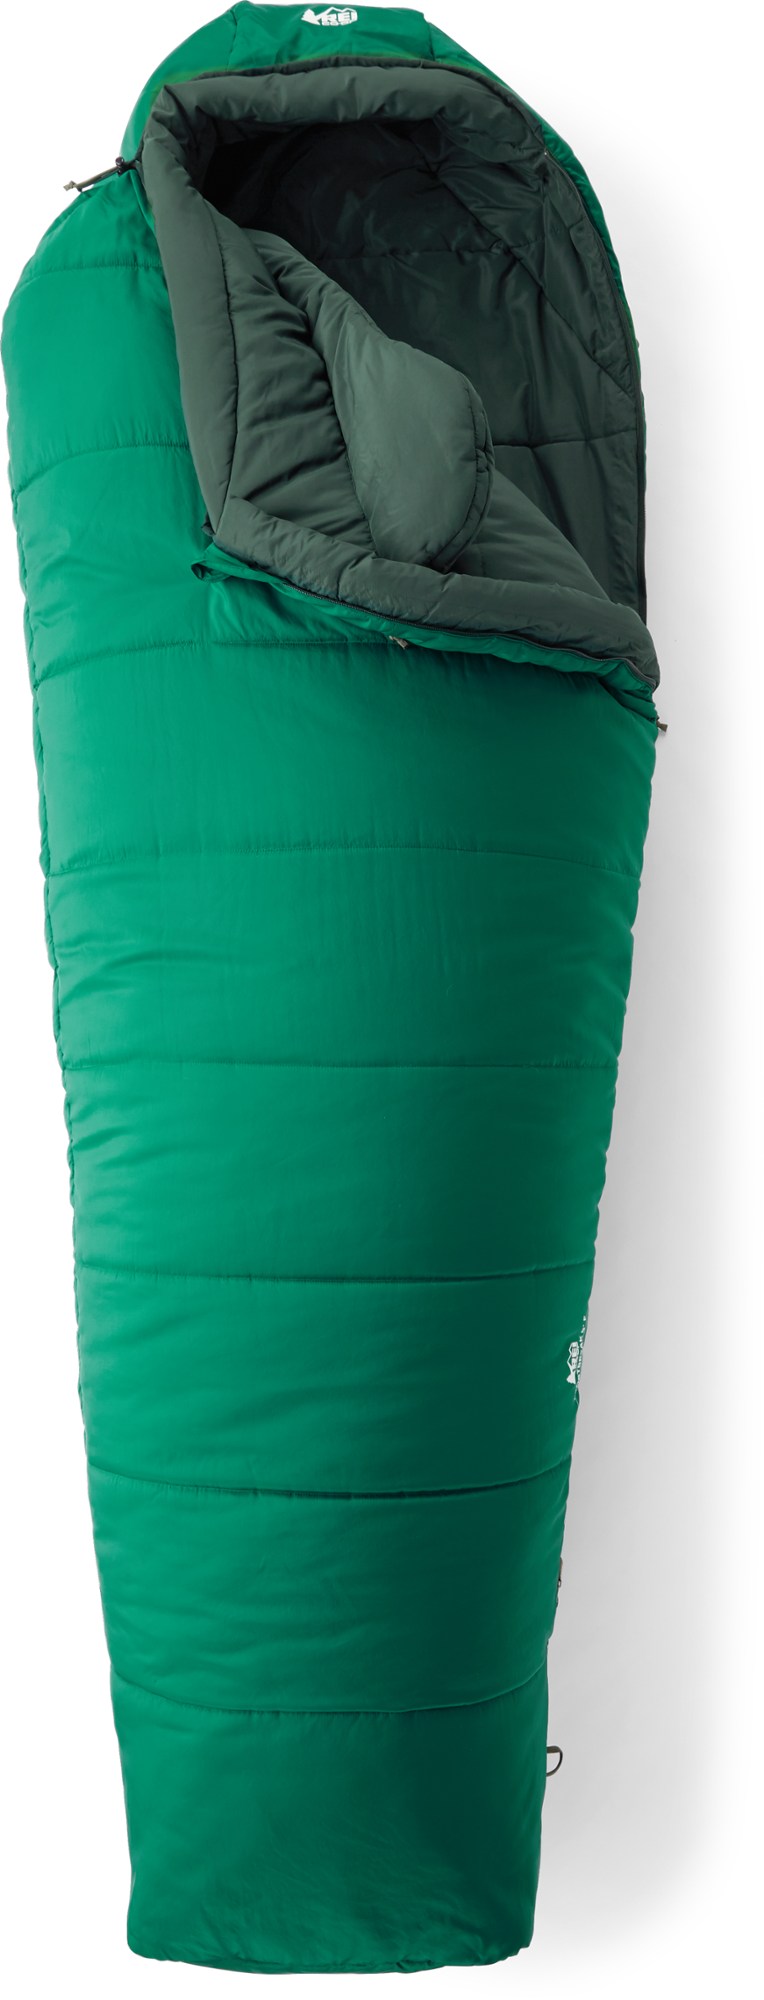 Спальный мешок Frostbreak 5 REI Co-op, зеленый